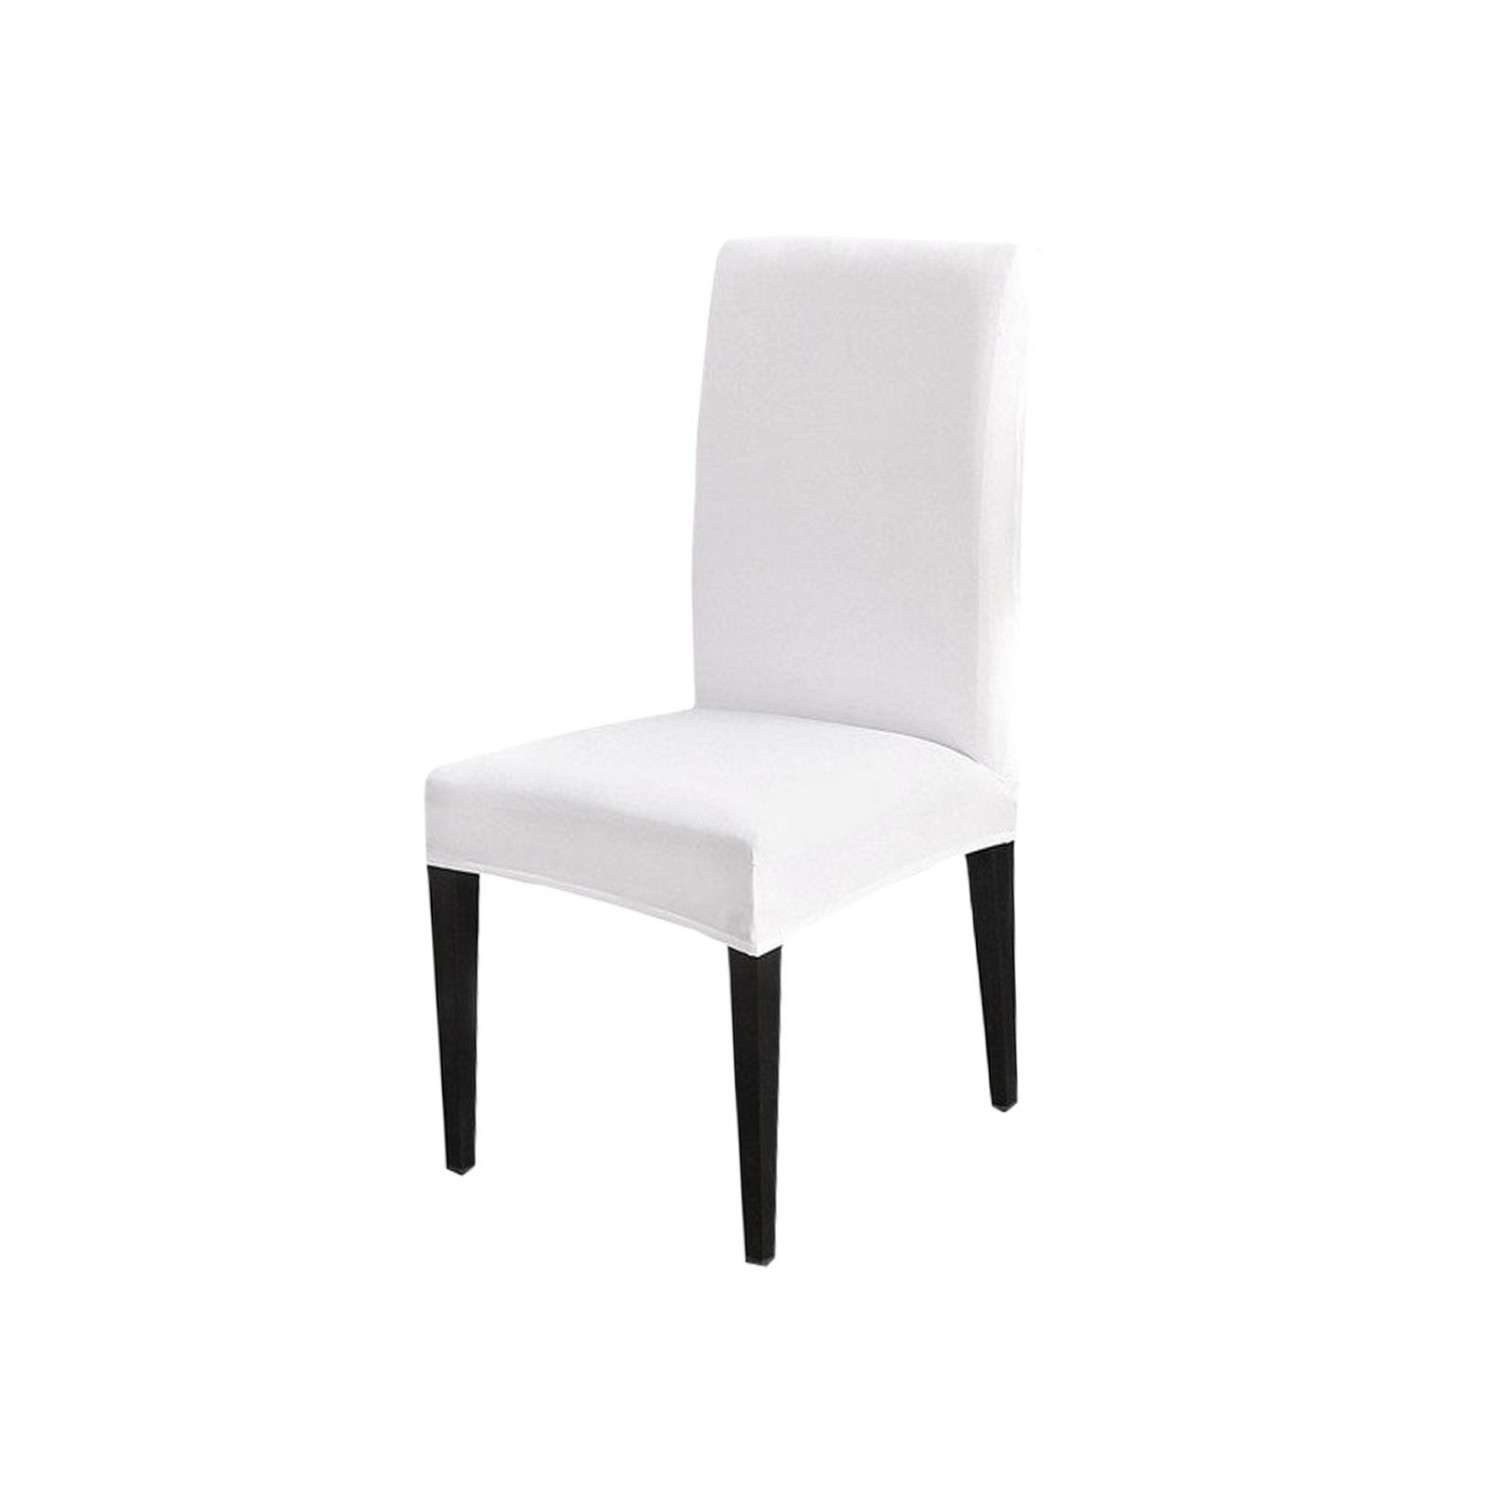 Чехол на стул LuxAlto Коллекция Jersey белый - фото 1